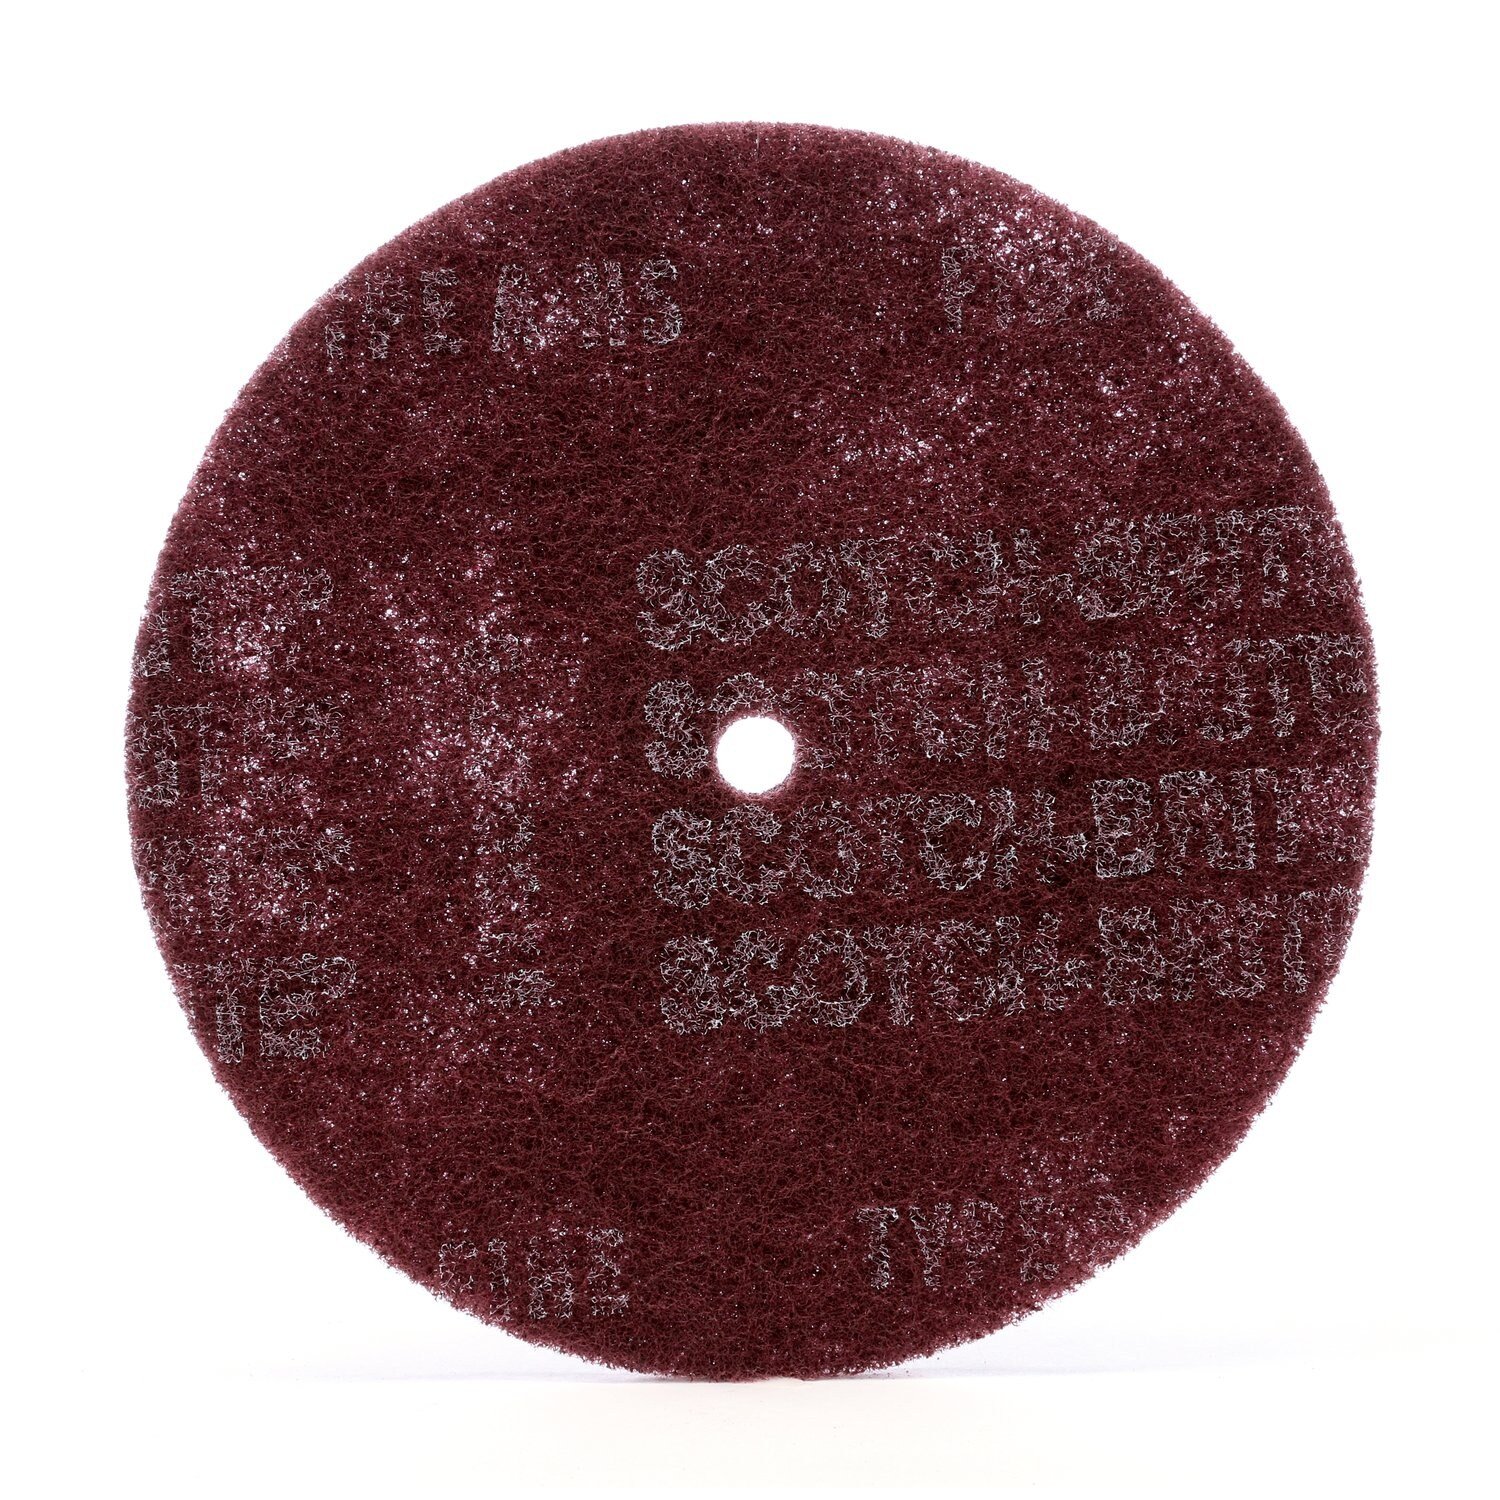 7010294725 - Scotch-Brite High Strength Disc, HS-DC, A/O Very Fine, 12 in x 1/2 in,
25 ea/Case